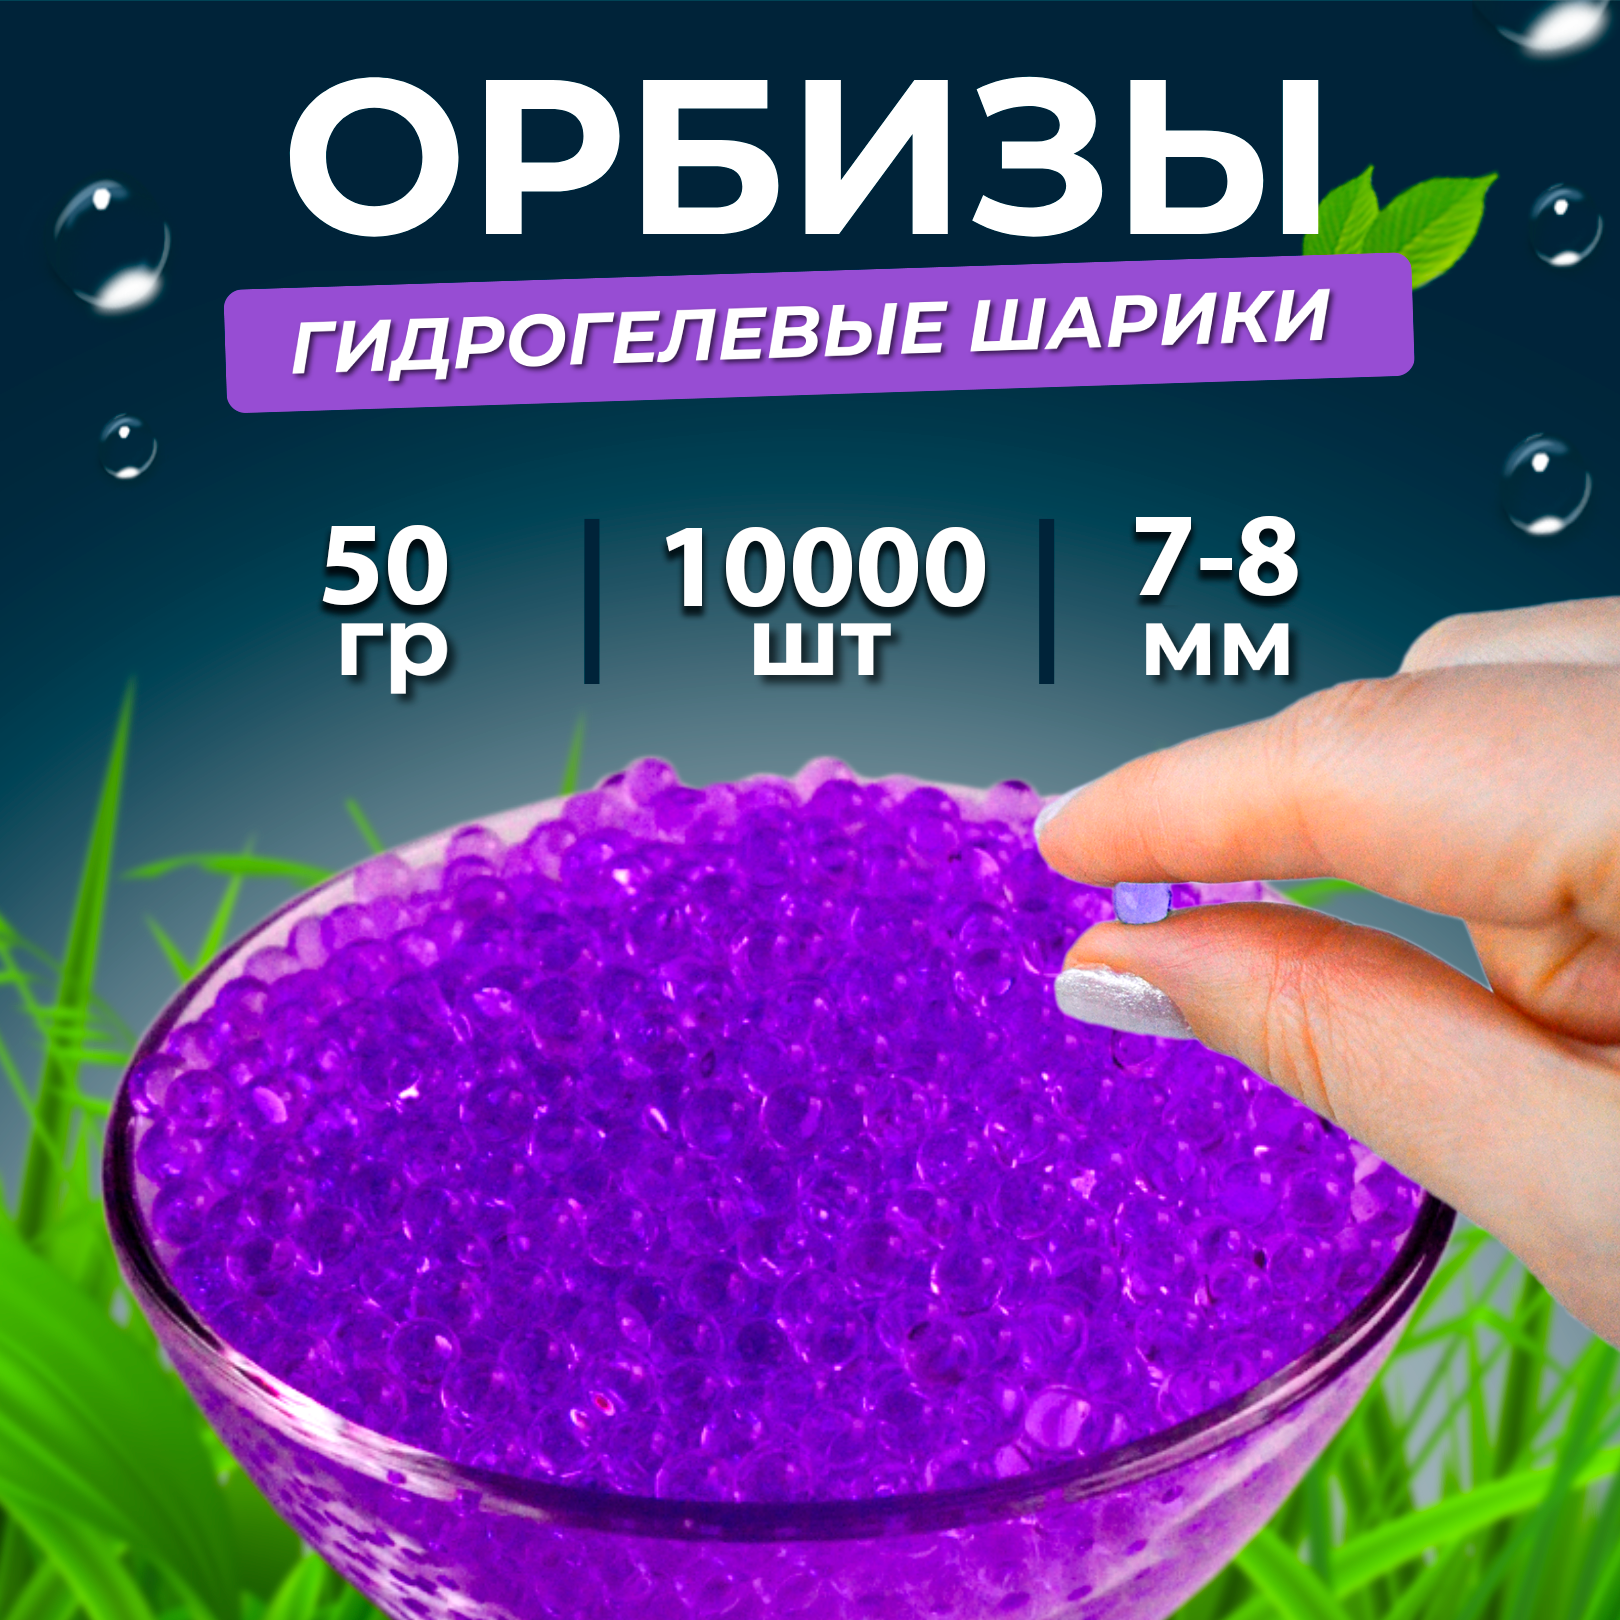 Орбизы гидрогелевые шарики 50 г 7-8 мм 10.000 шт фиолетовые